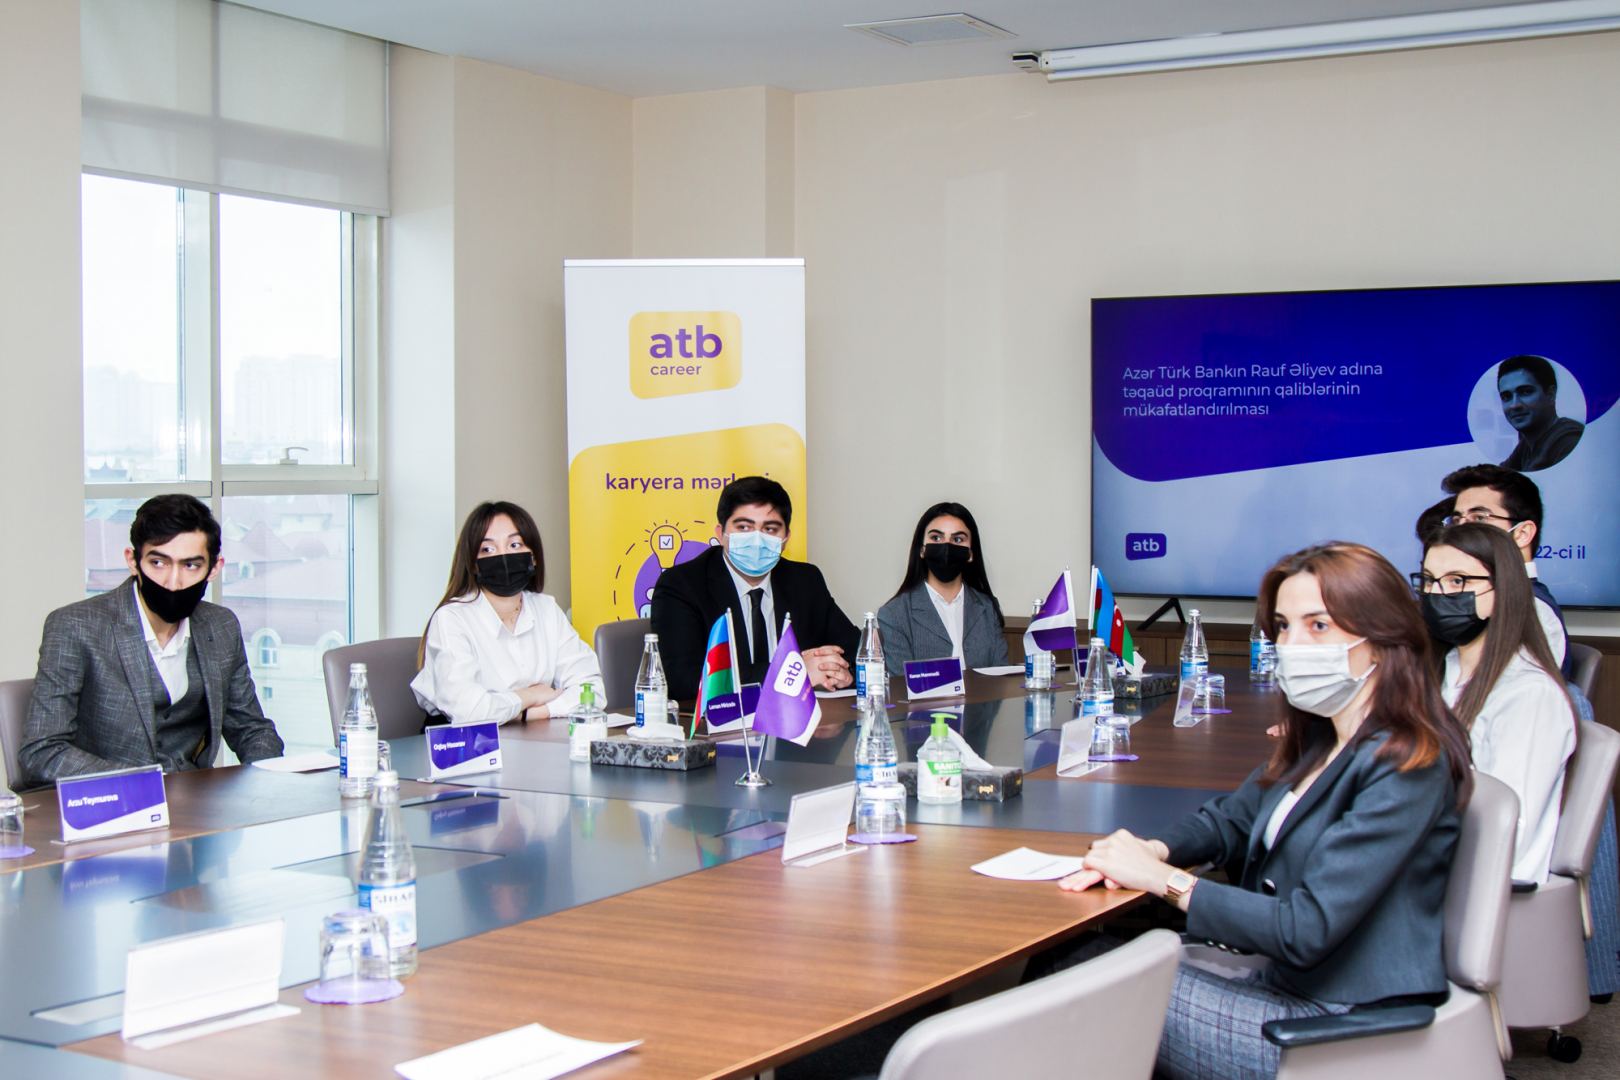 Определены студенты, которые получат специальную стипендию от Azer Turk Bank (ФОТО)